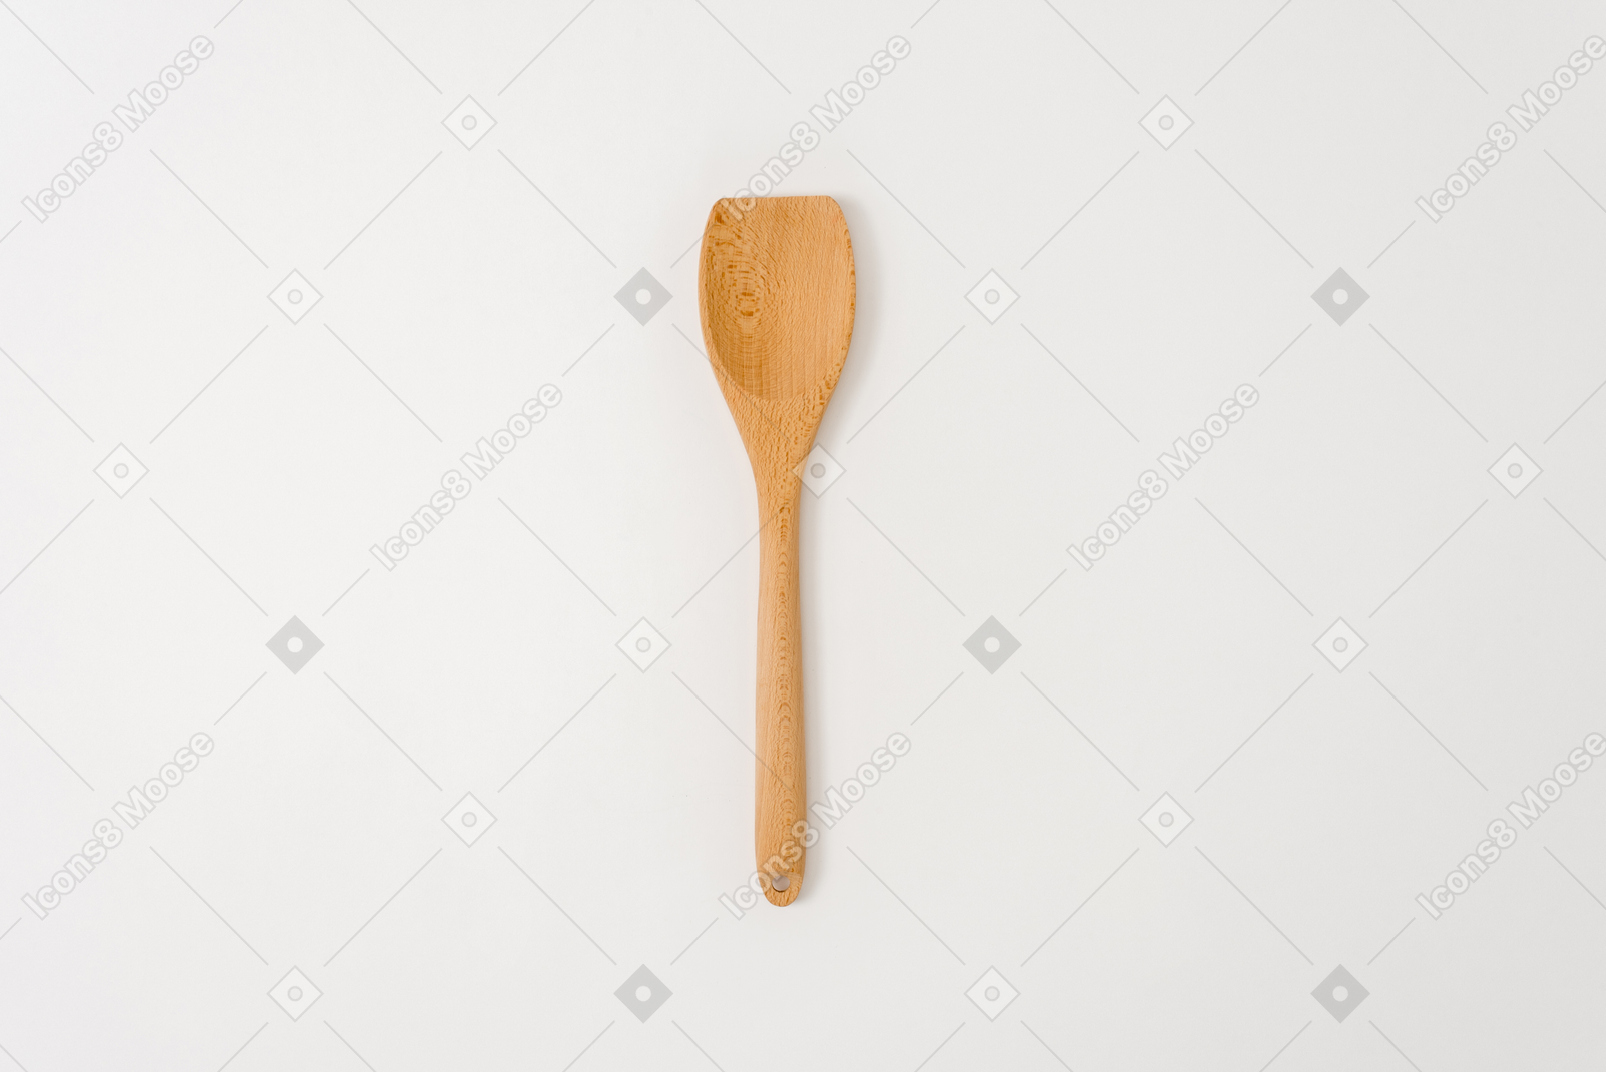 Cucchiaio di legno su sfondo bianco